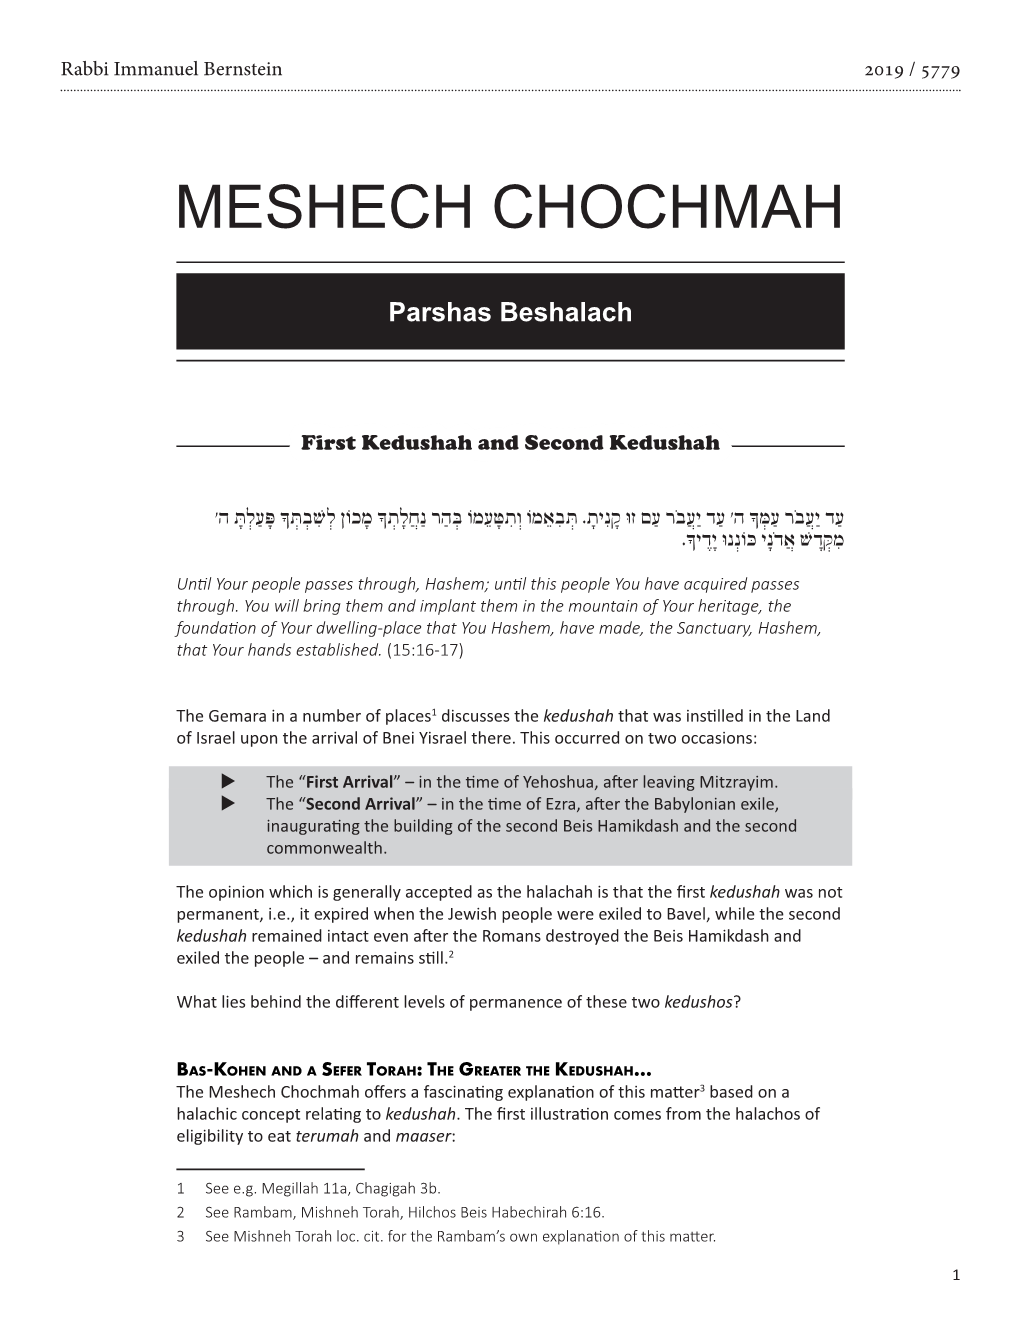 Meshech Chochmah